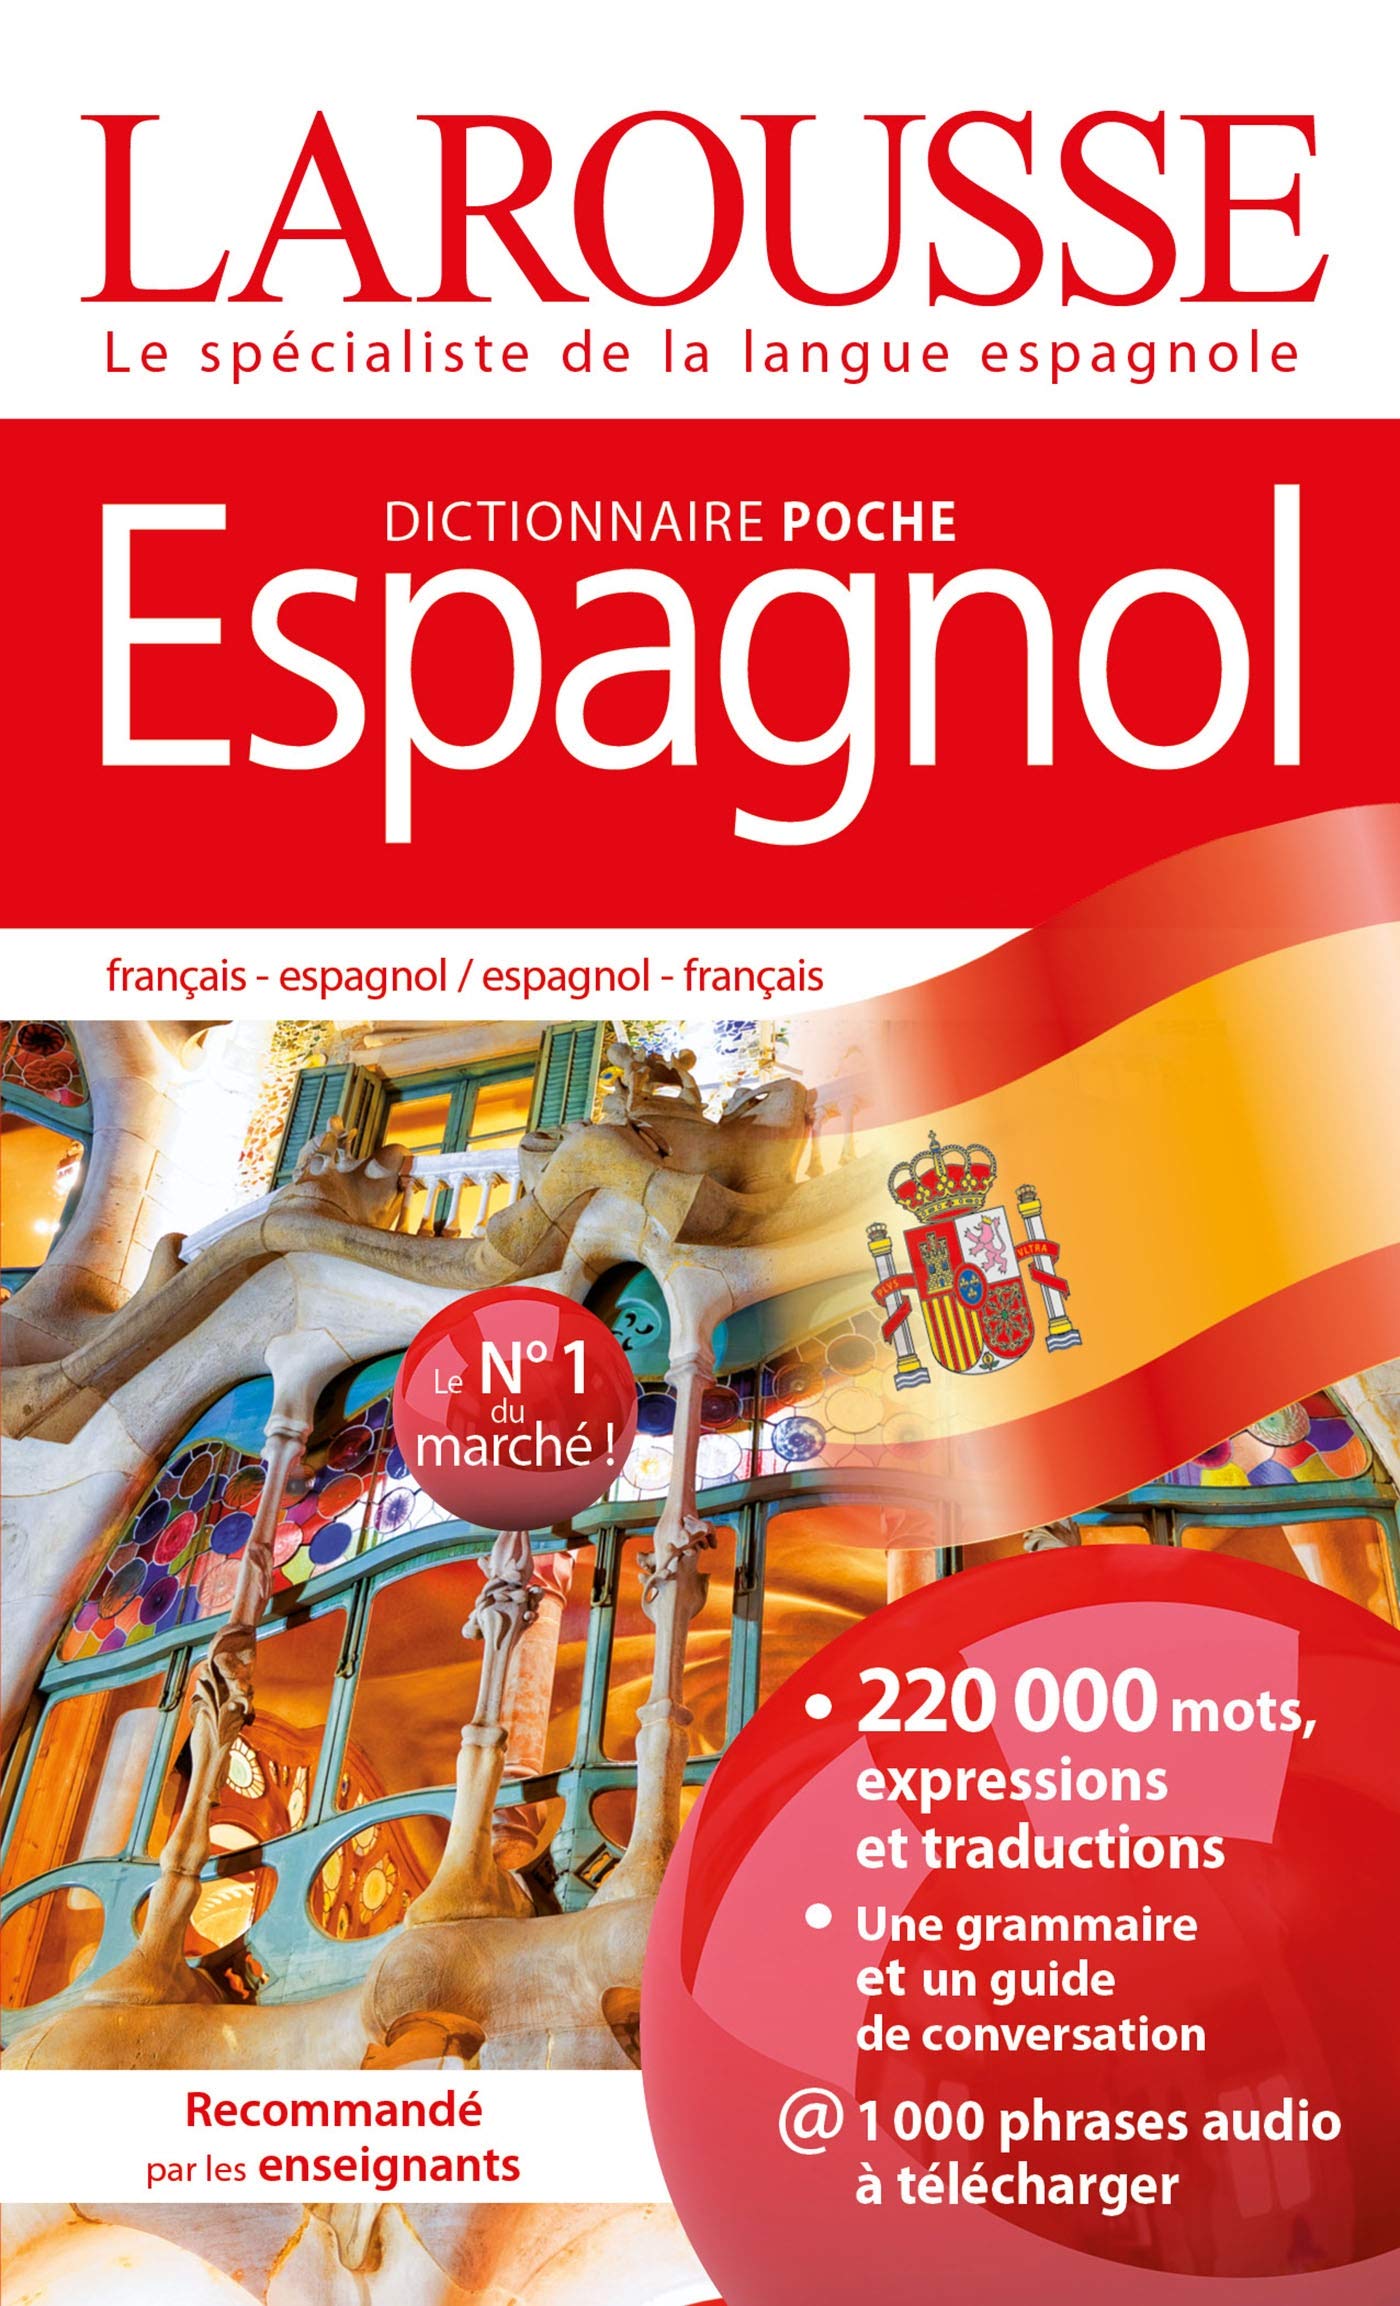 Dictionnaire Larousse poche Espagnol Broché – 19 juin 2020